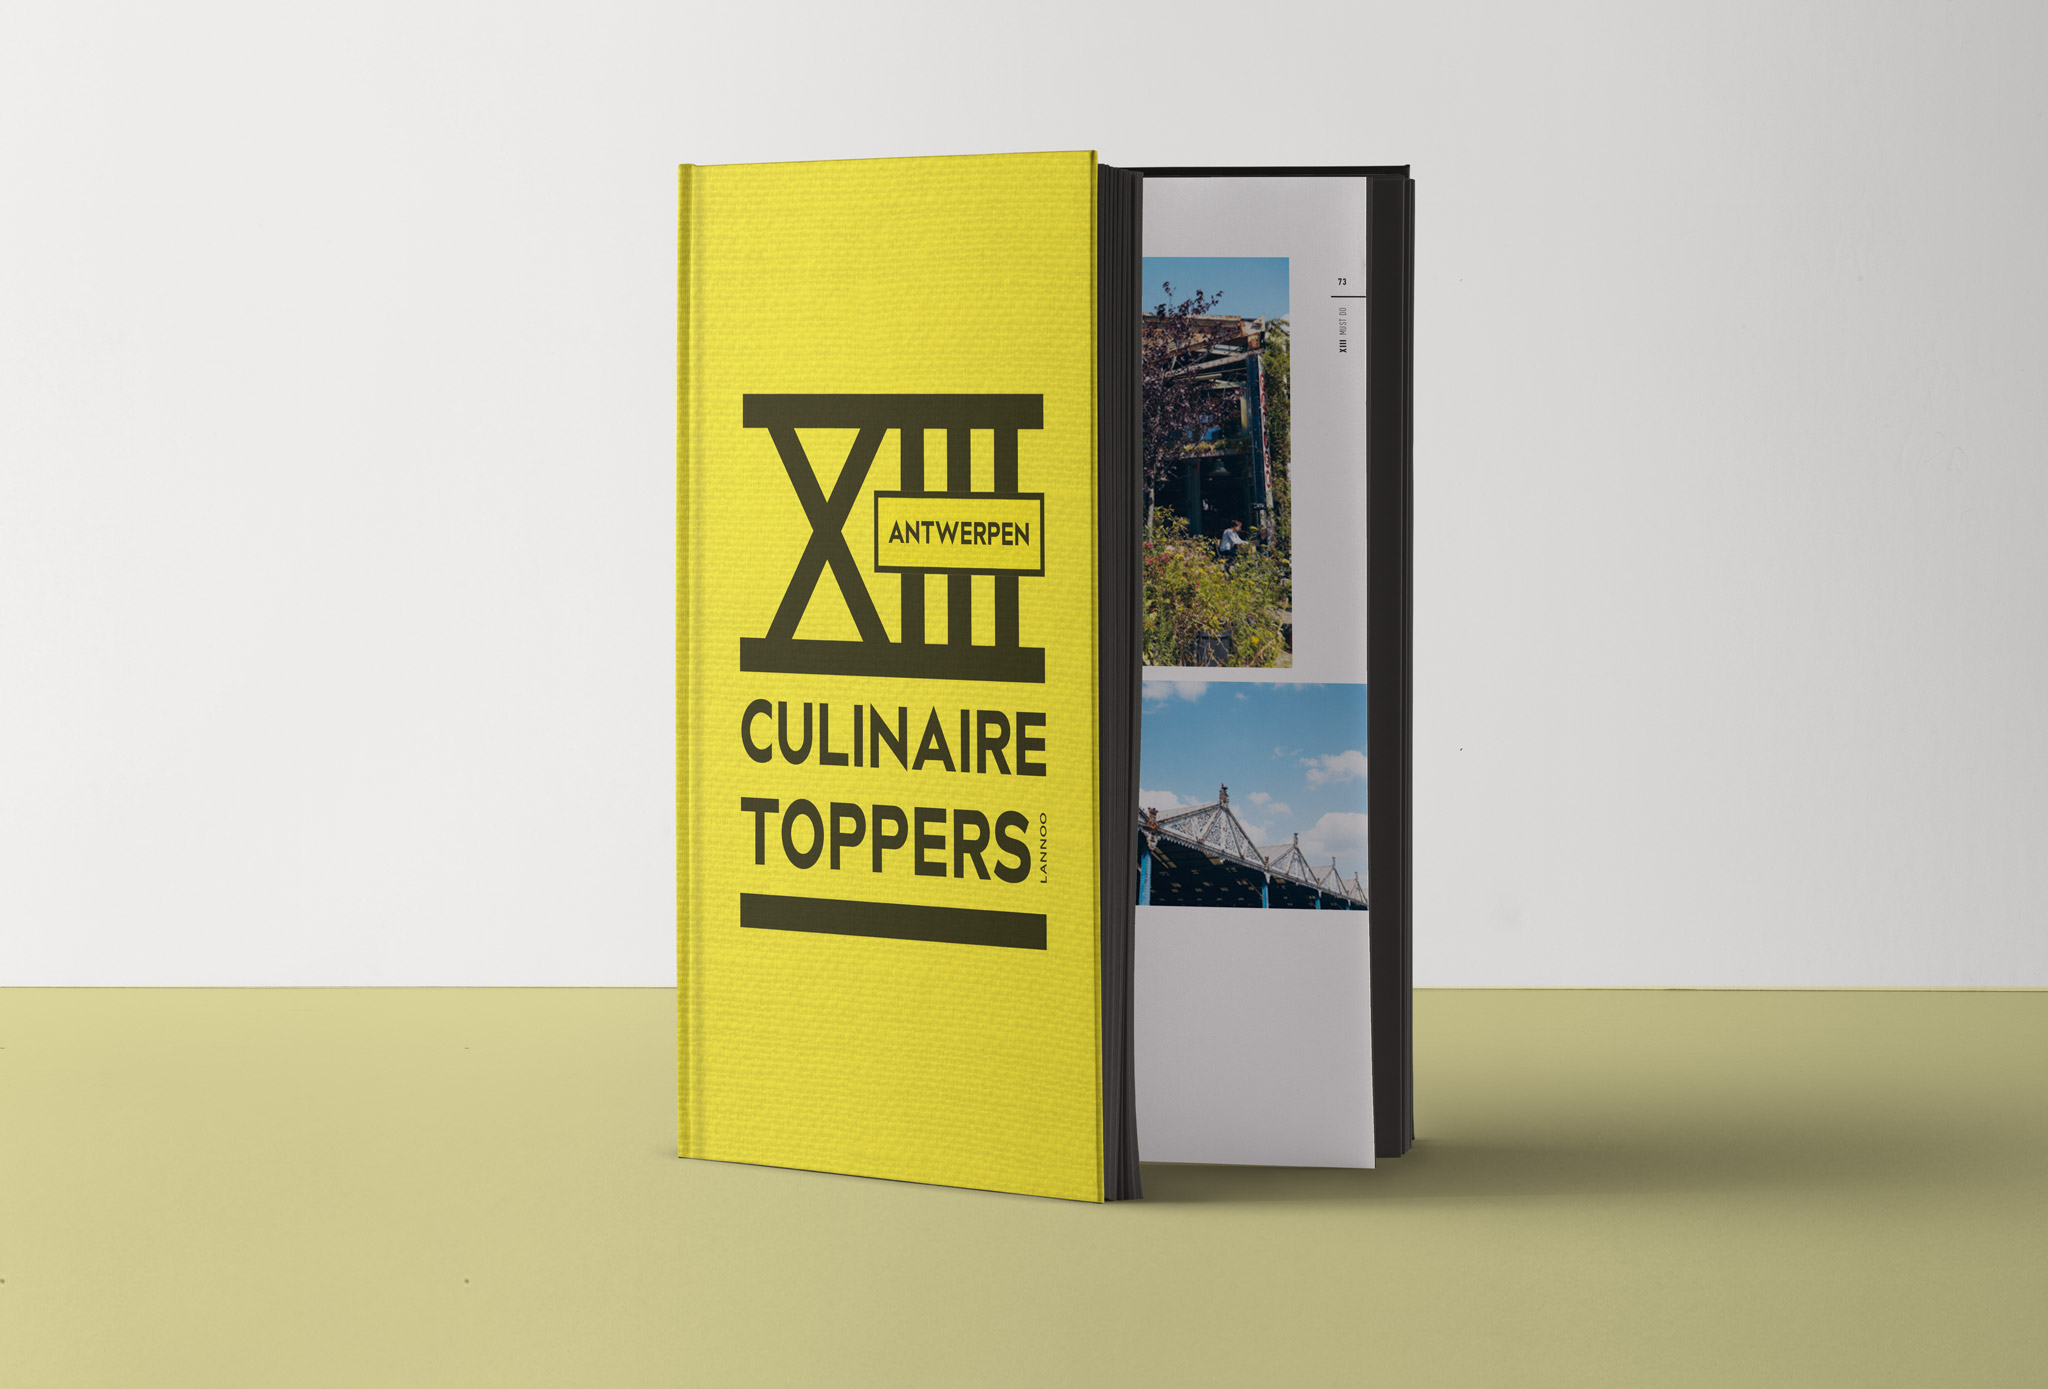 XIII Culinaire toppers in Antwerpen